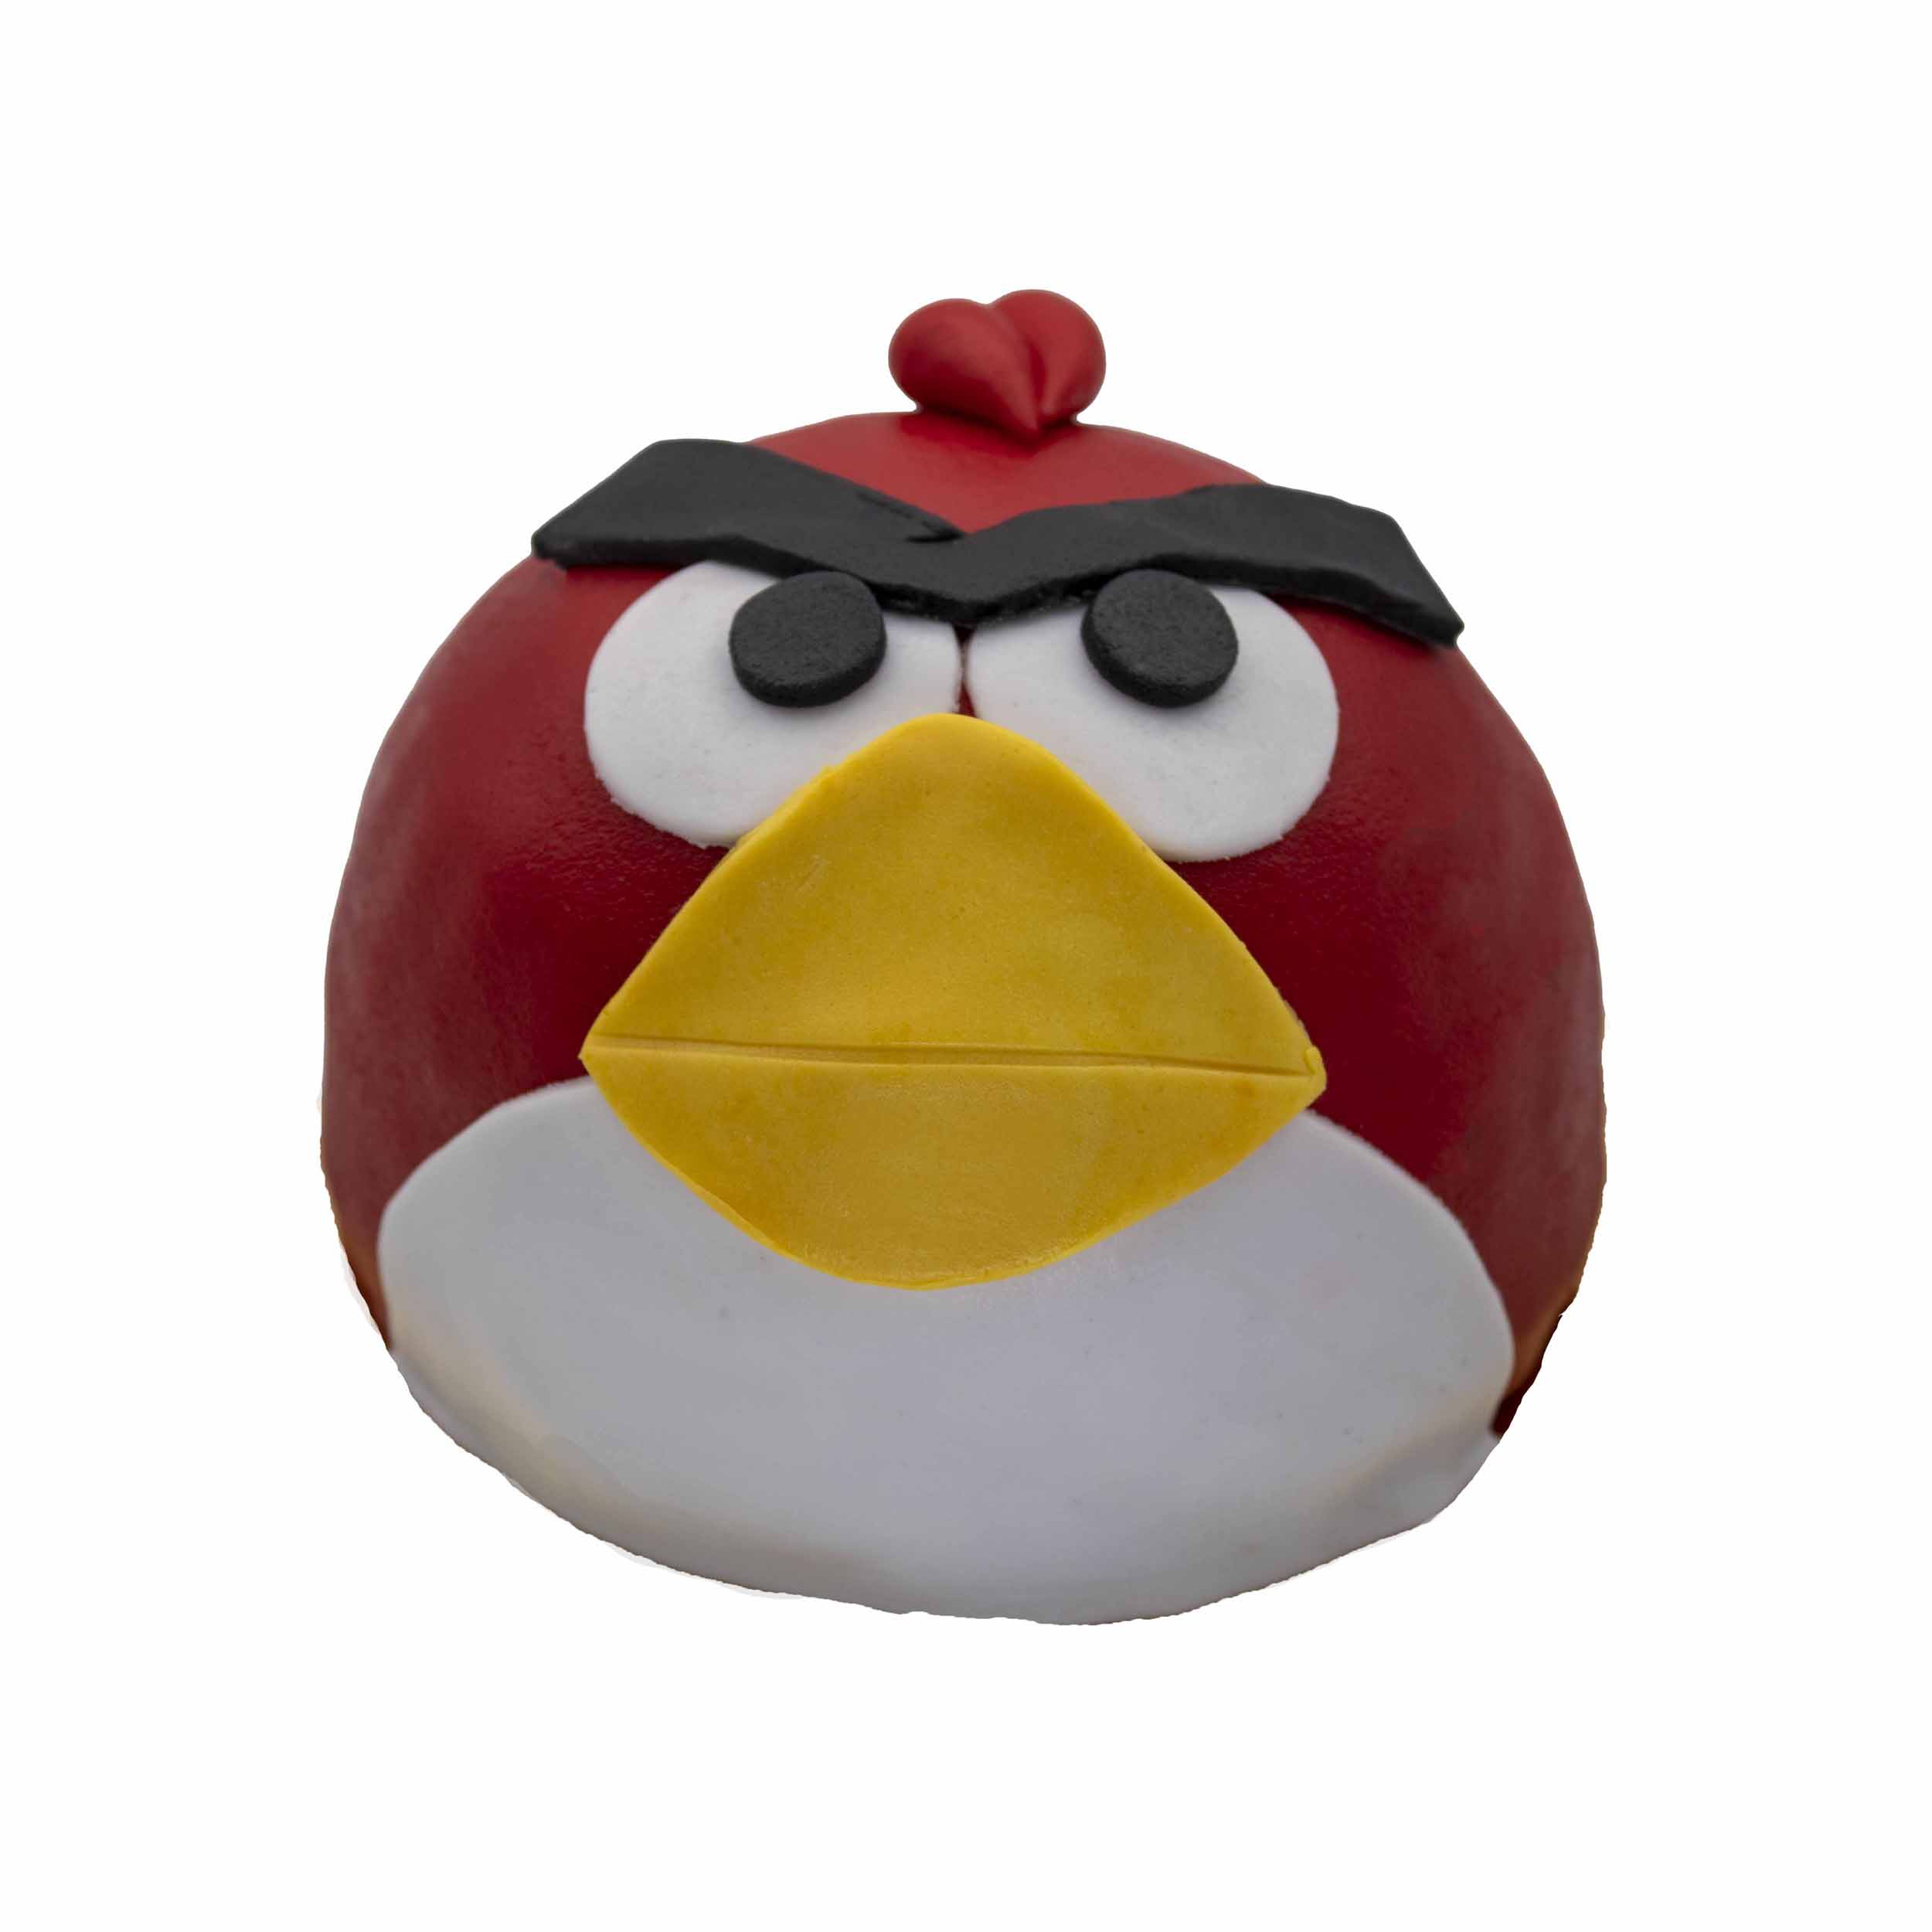 Angrybird boltaartje - Banketbakkerij Mastenbroek